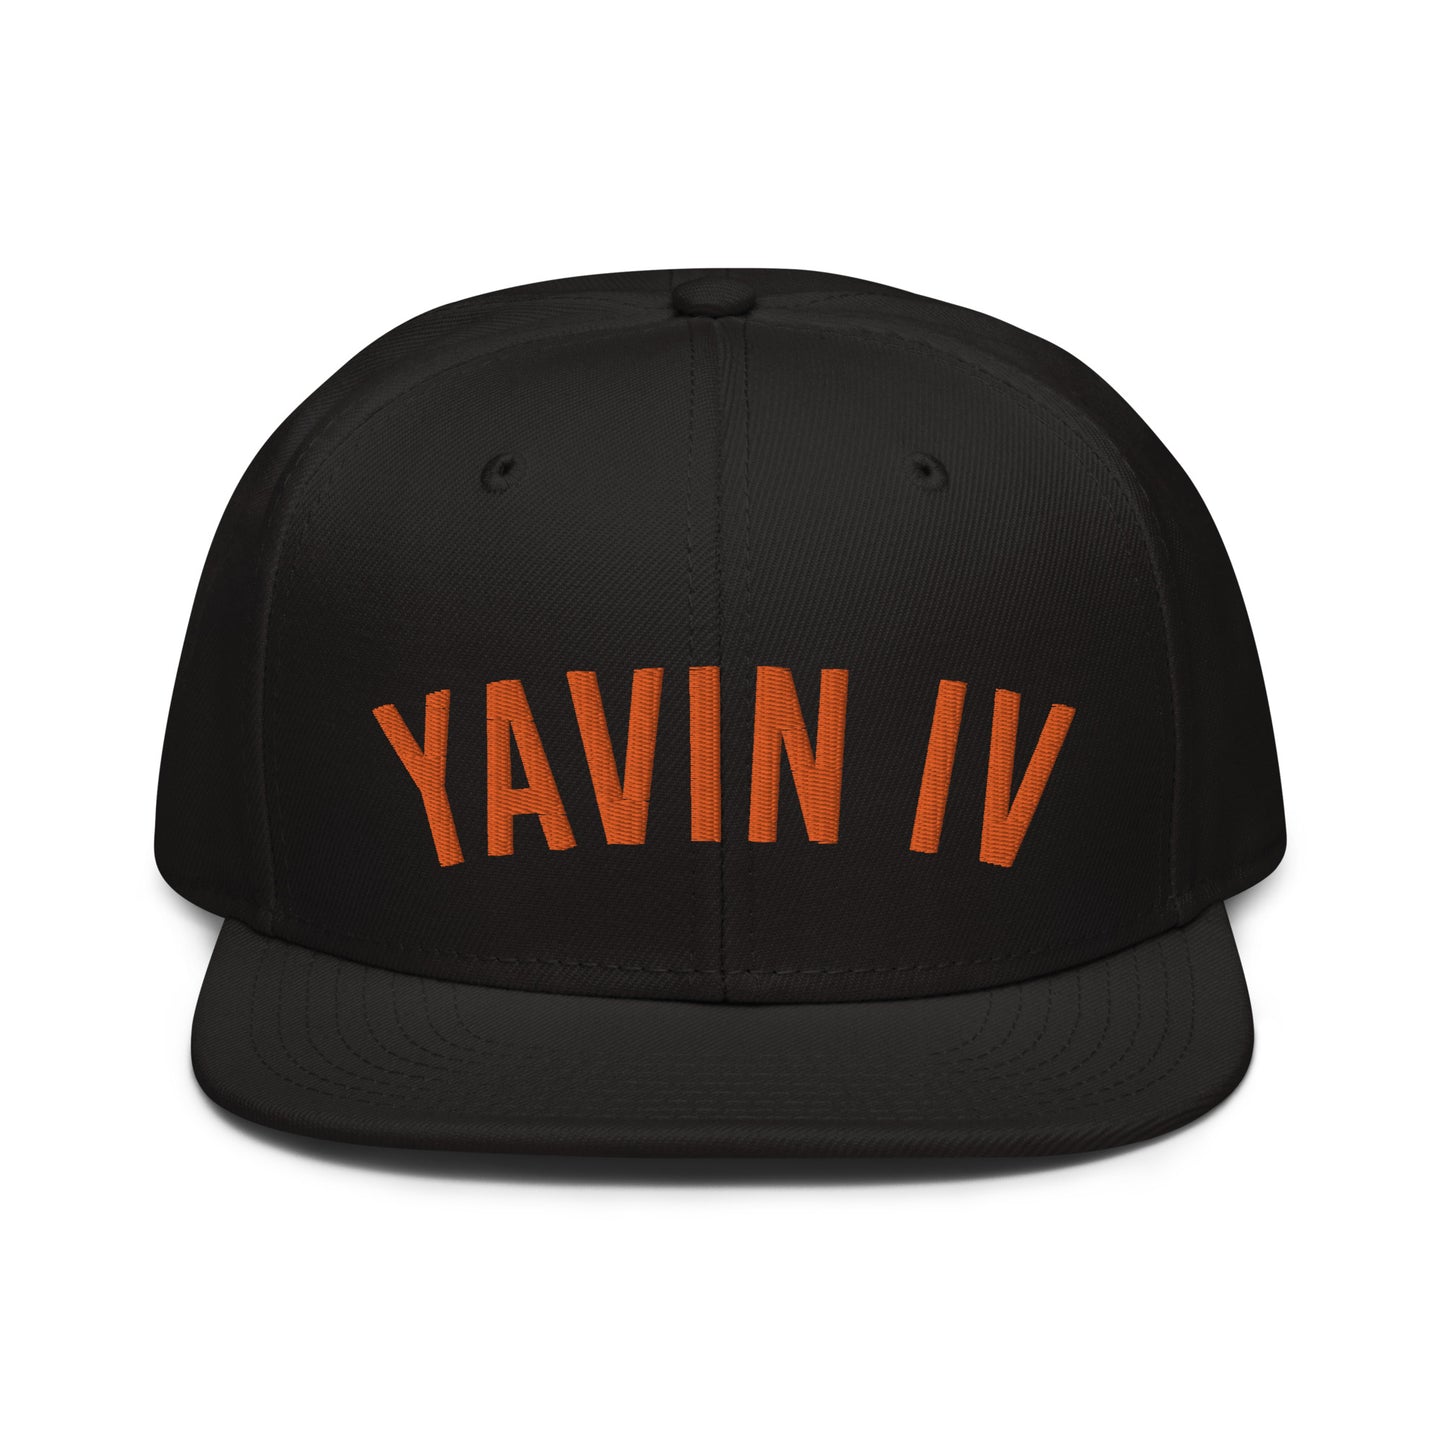 Yavin VI Home Team snapback hat